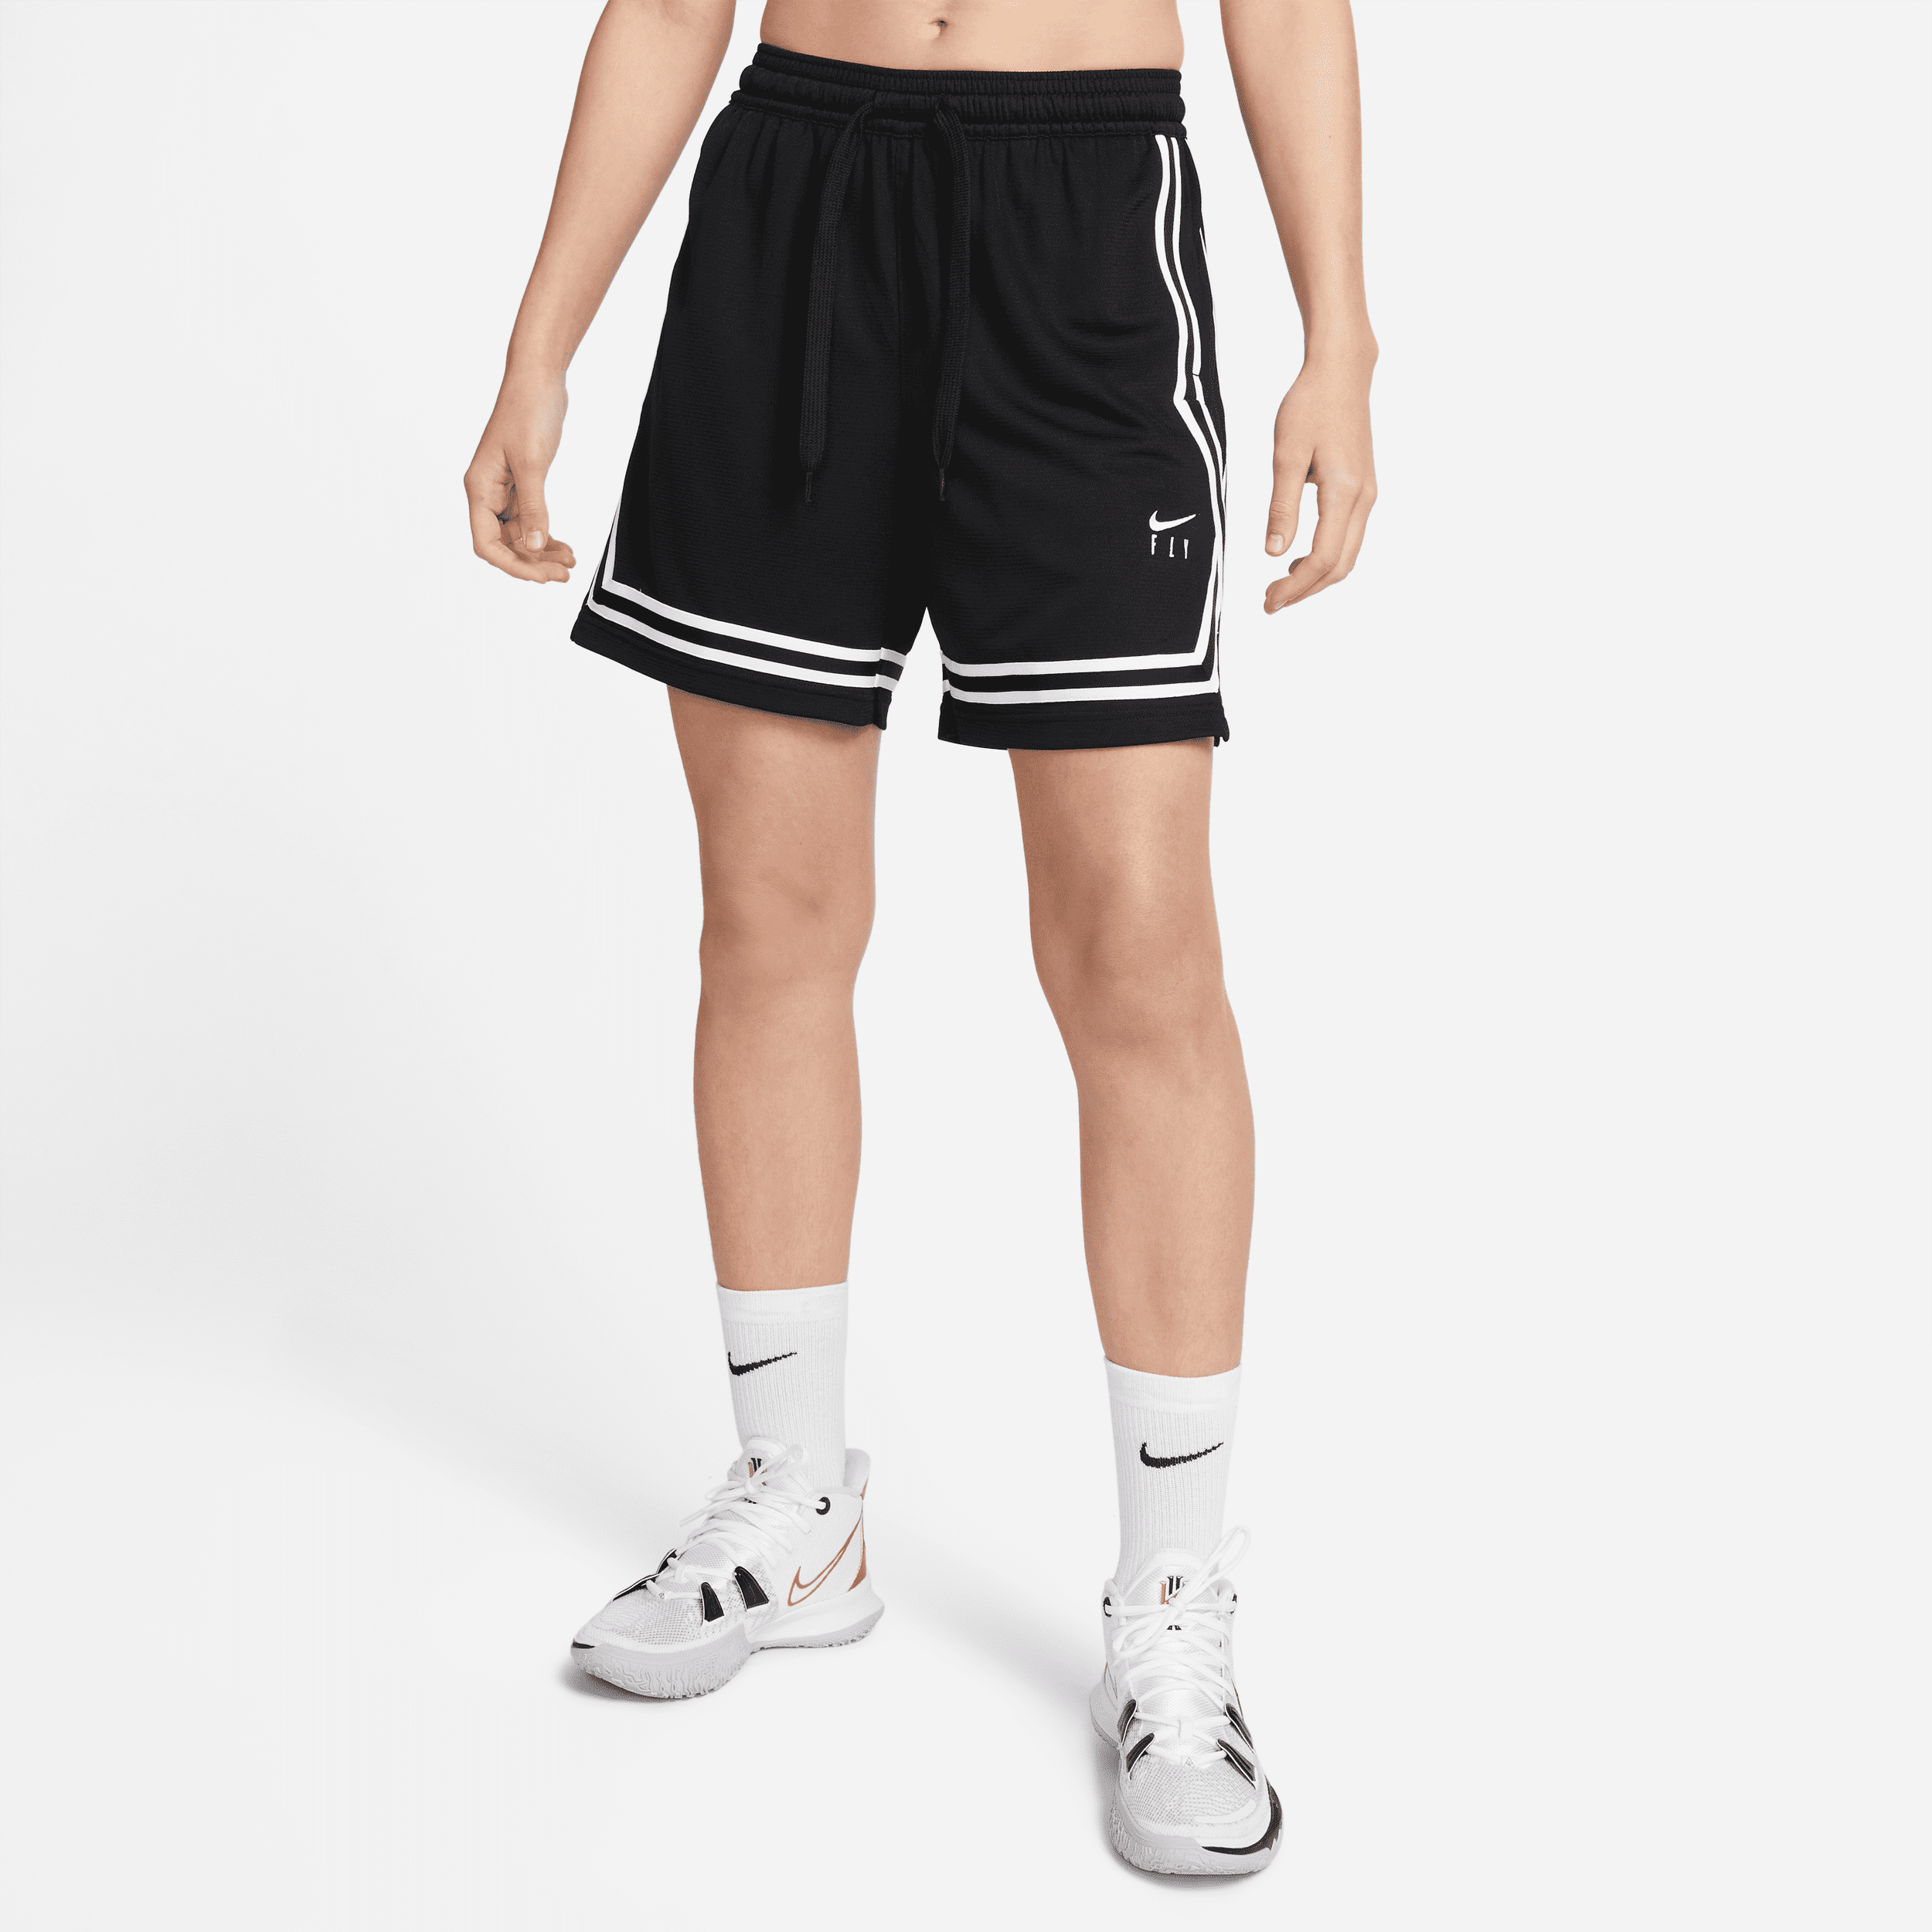 Shorts da basket Nike Fly Crossover - Donna - Nero